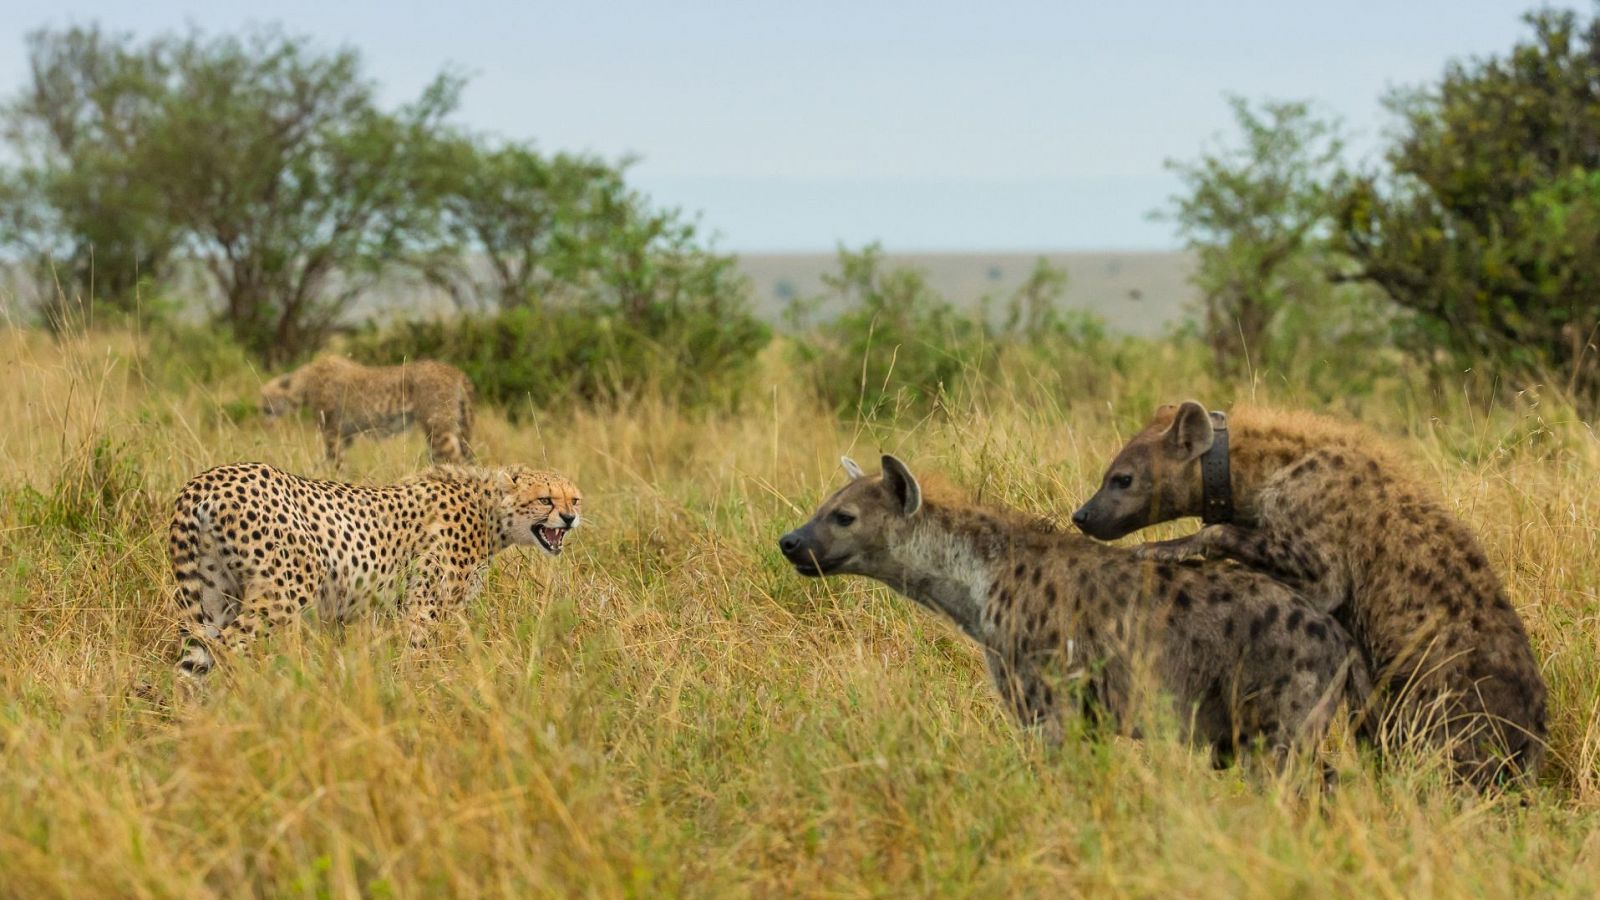 Leones contra hienas - Duelo de cazadores